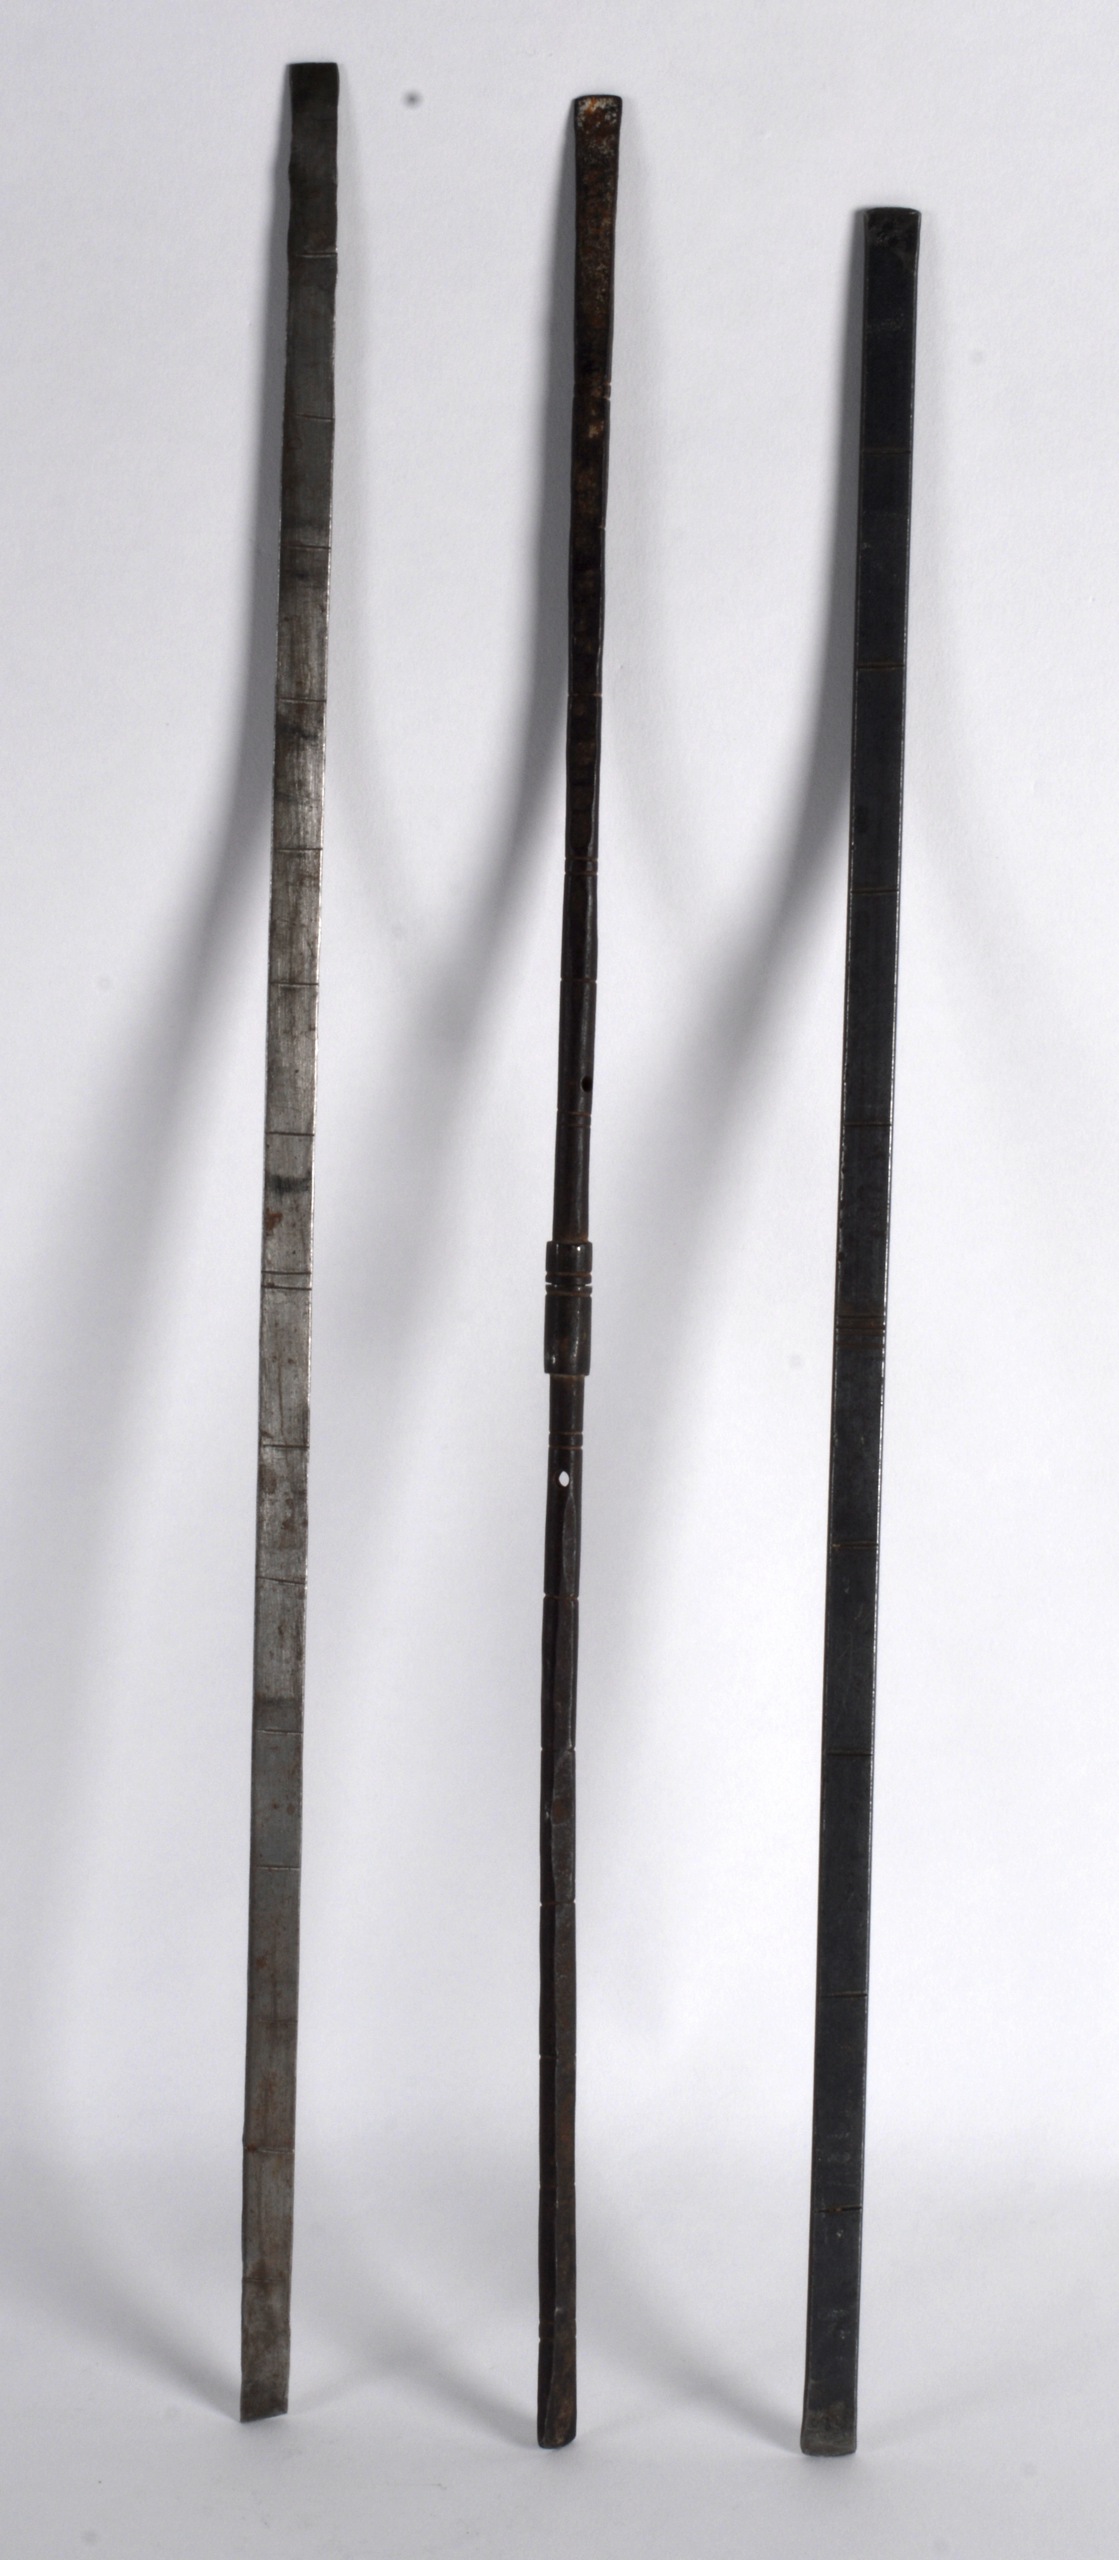 Three Metal Measuring Rods, 10th/12th Century, Persian, Khurasan (3)